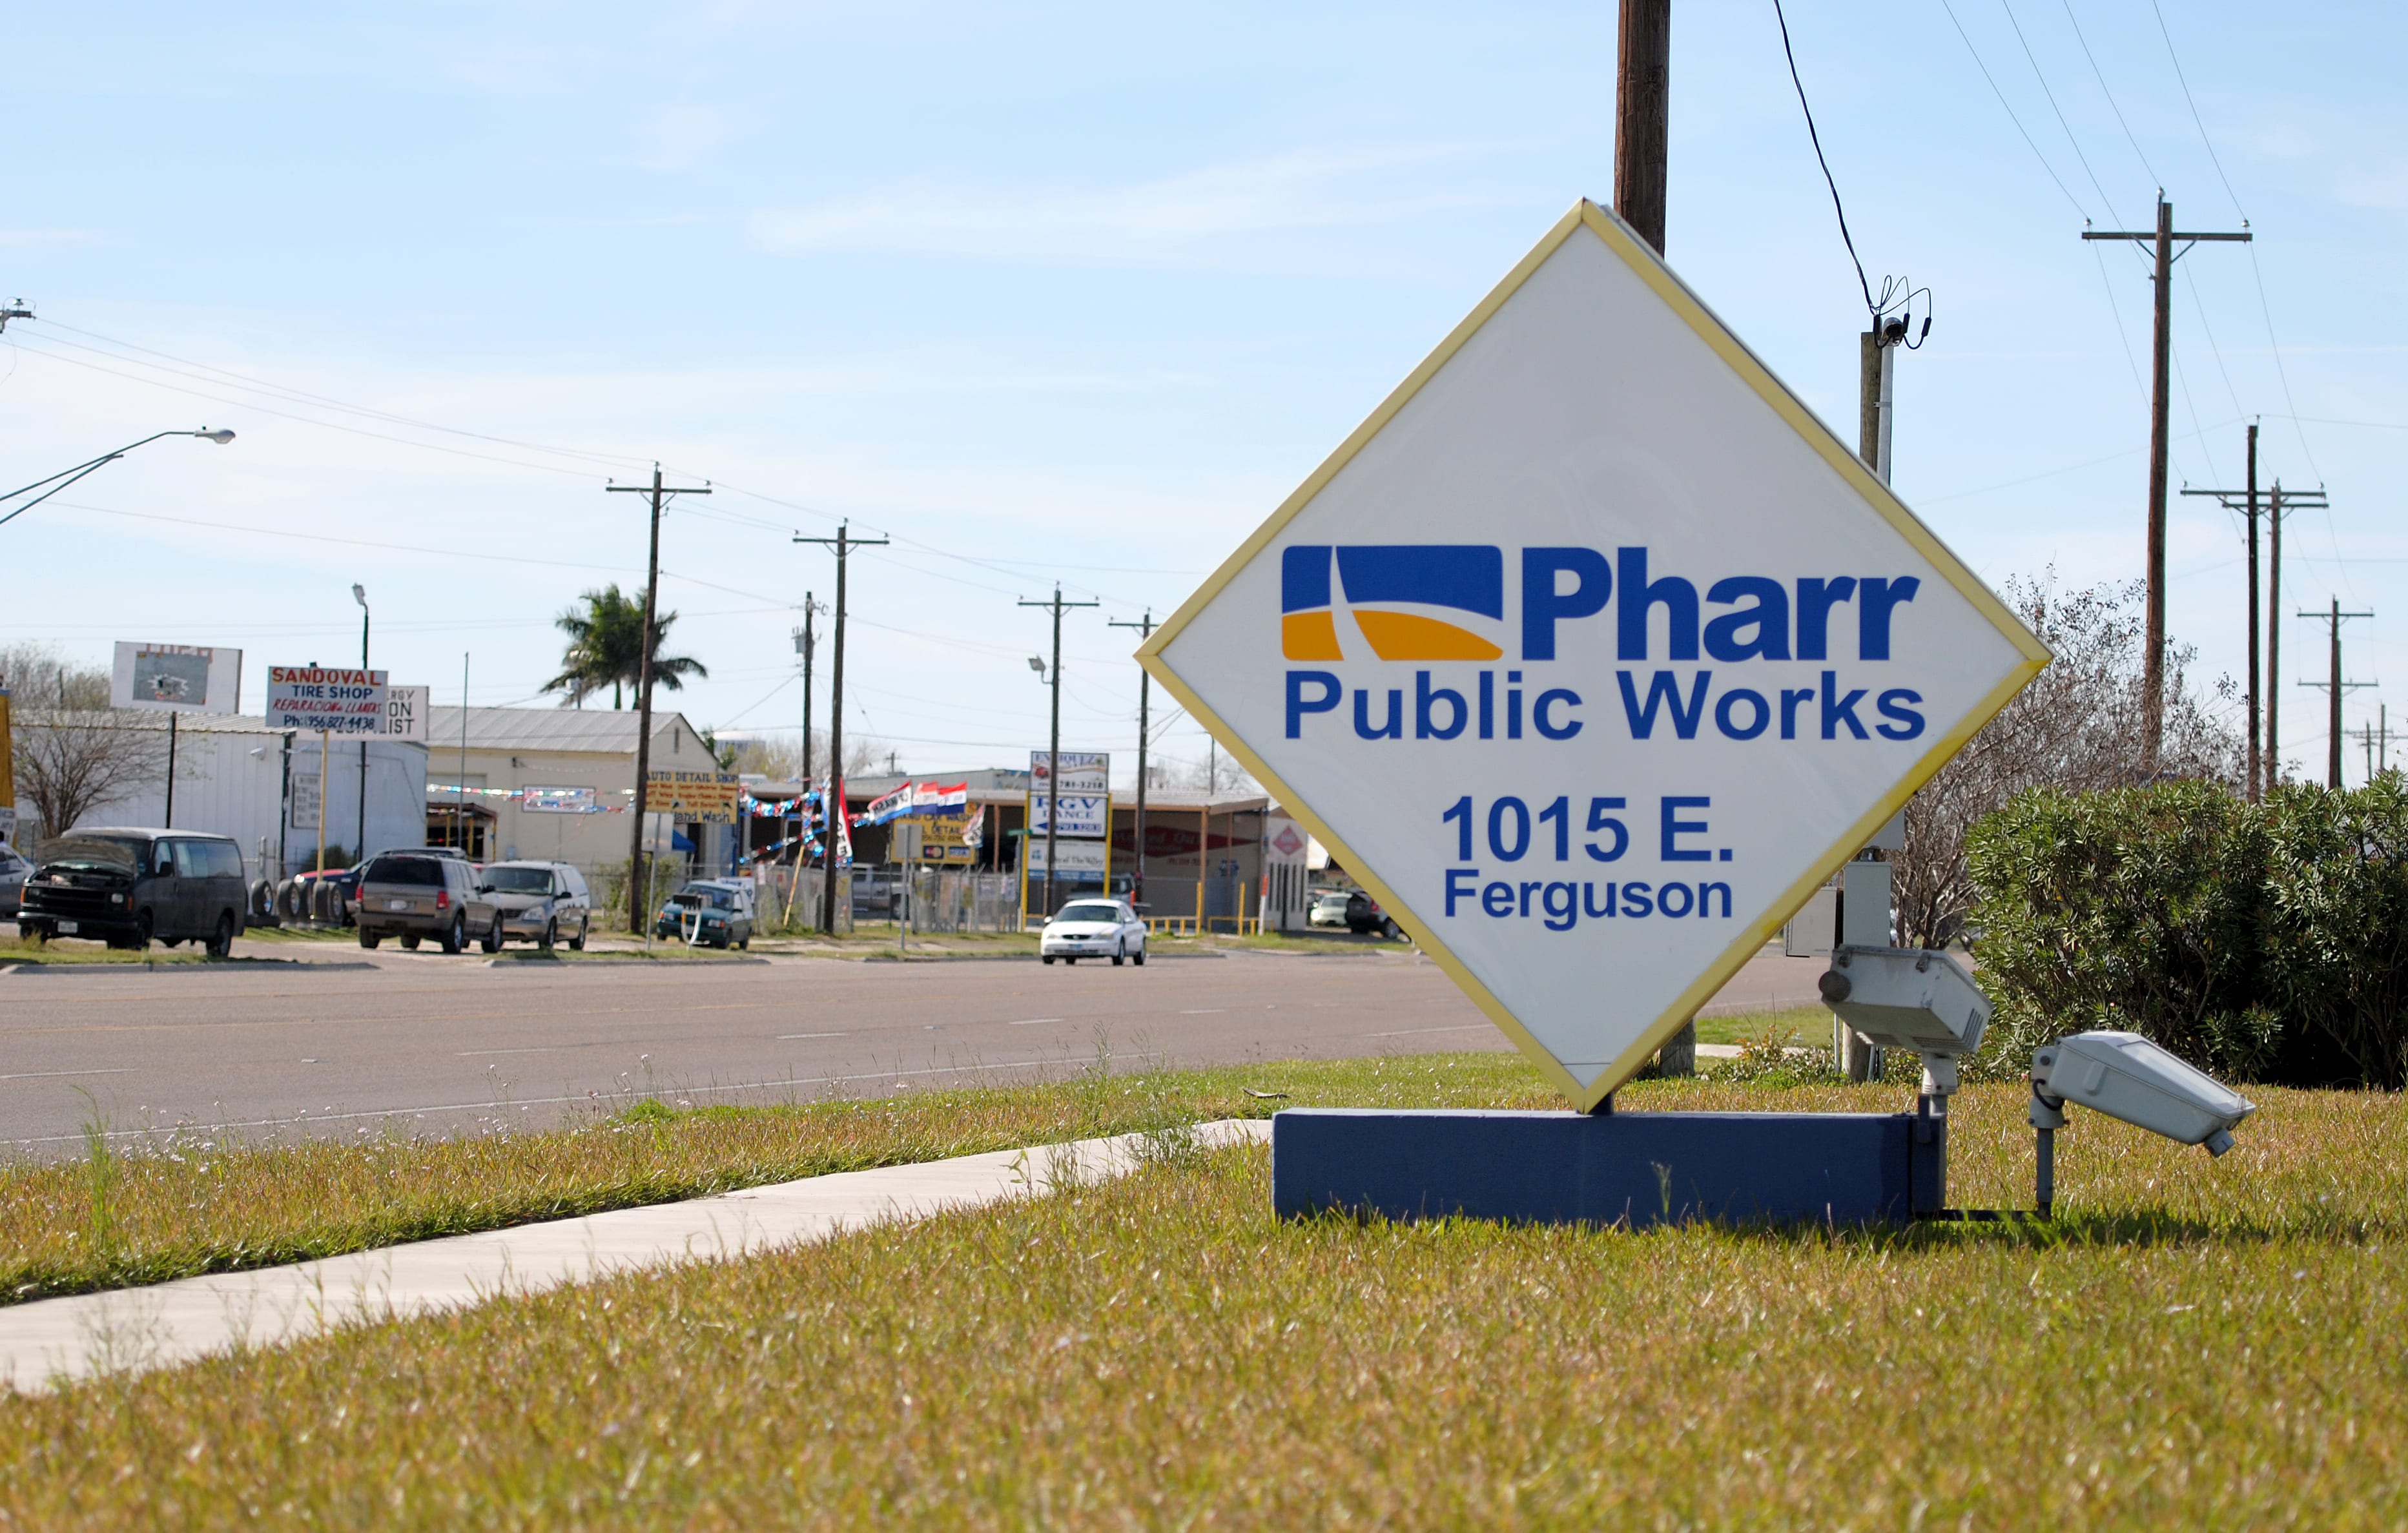 Pharr Public Works - 1015 E. Ferguson